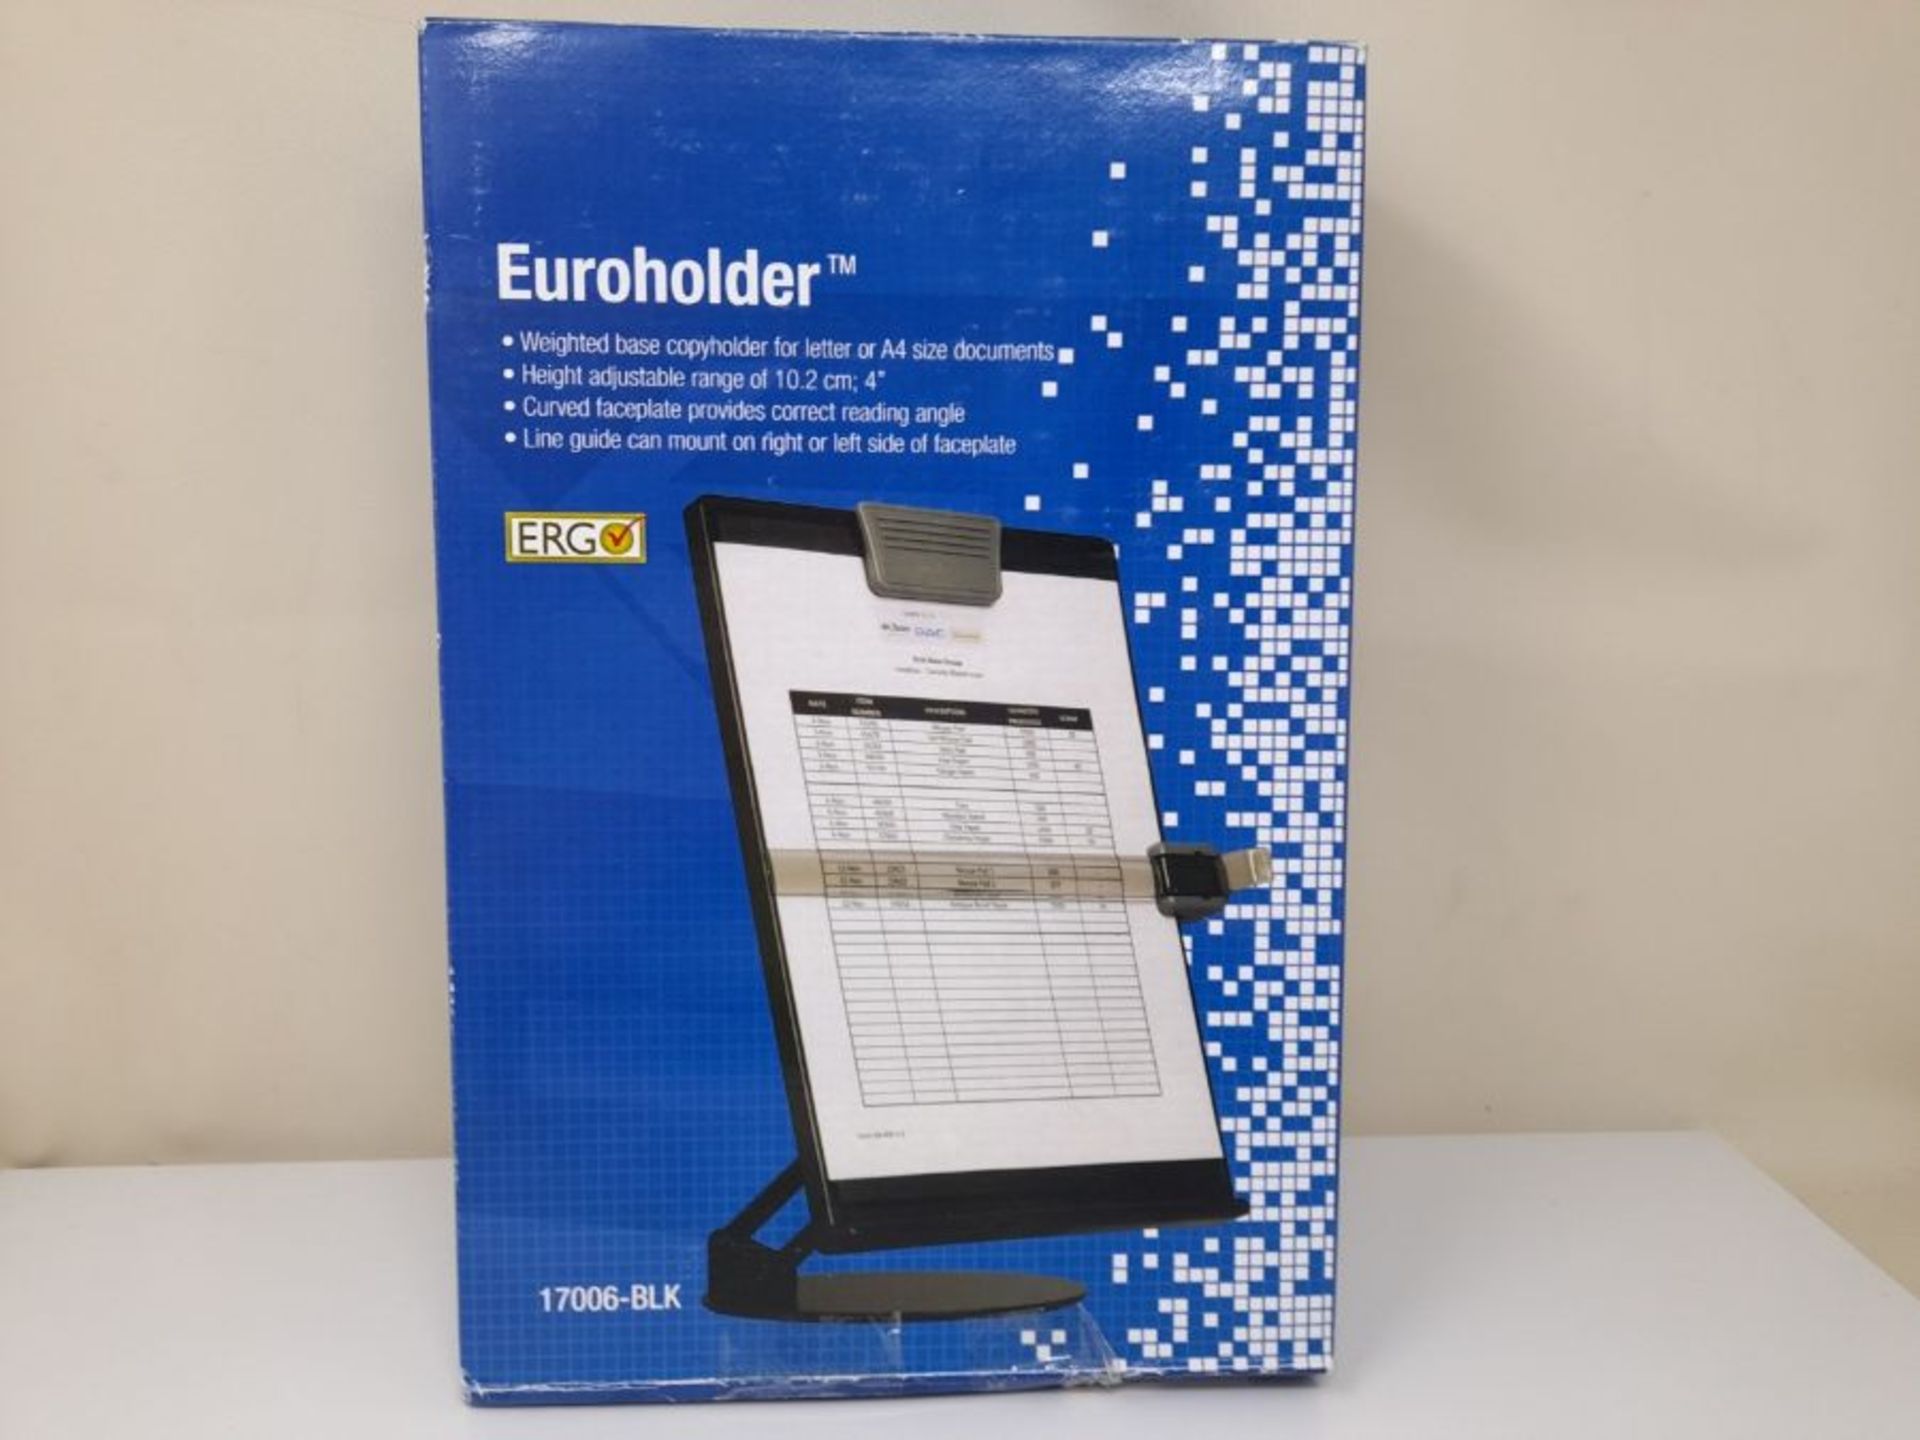 DAC EH17006 Euroholder Desktop Document Holder - Image 2 of 3